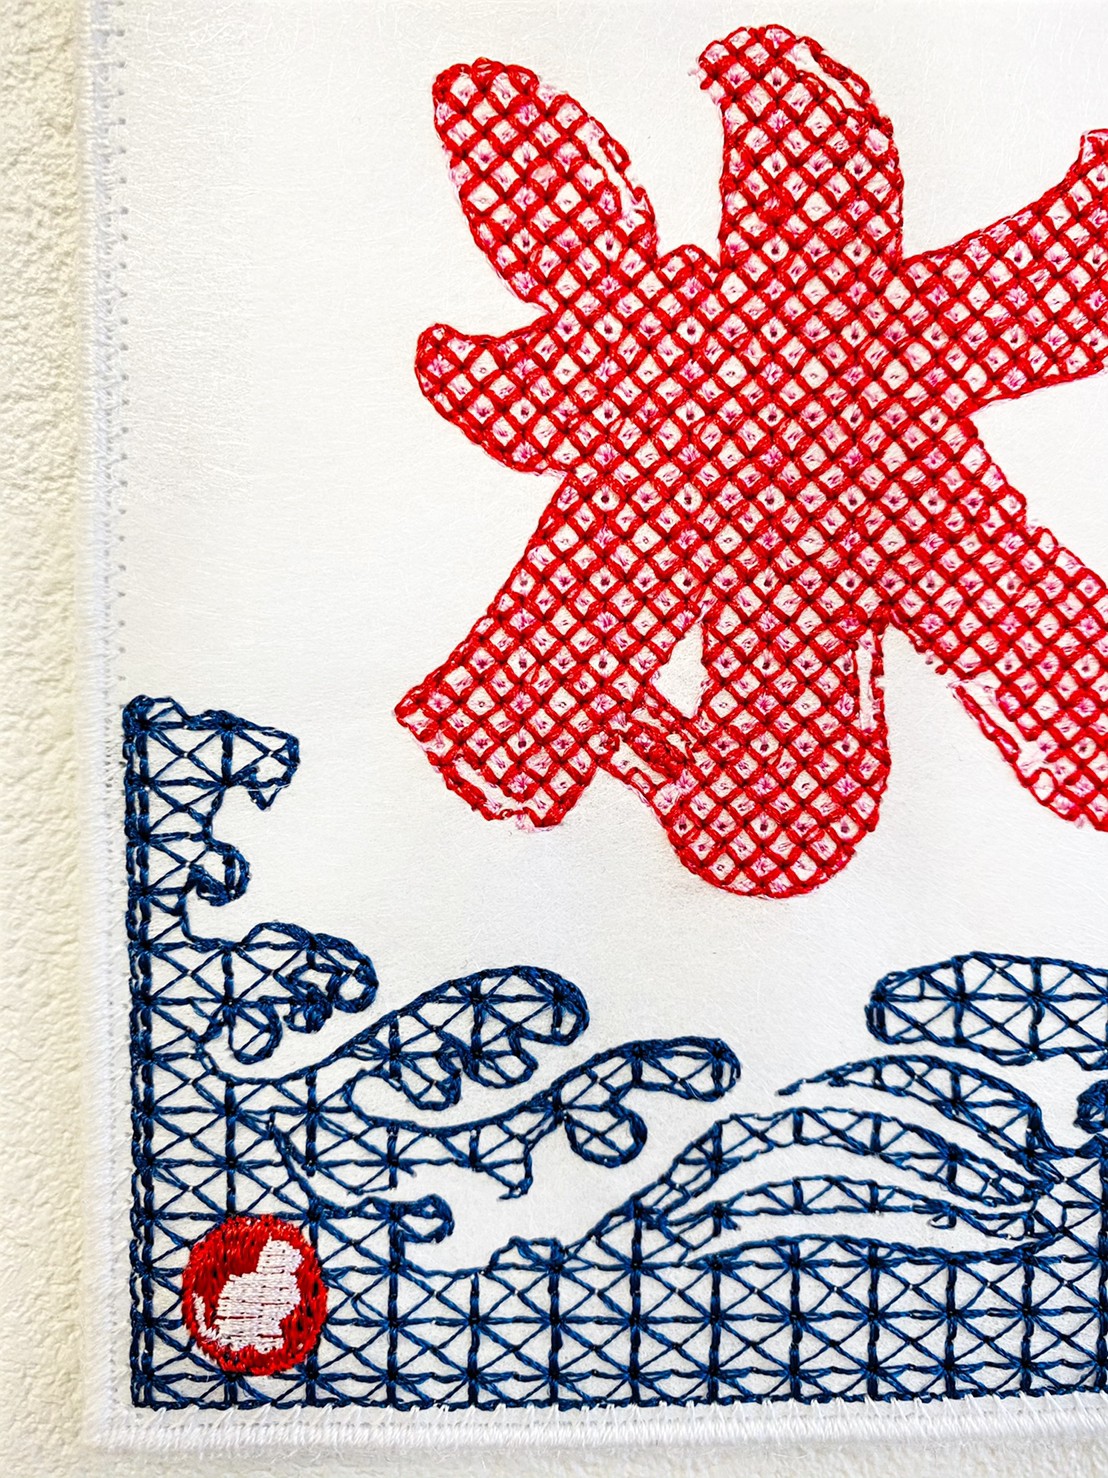 刺しゅうで作った うれしっしゅの絵はがき 夏 金魚 氷 花火 各1枚の3枚セット Iichi ハンドメイド クラフト作品 手仕事品の通販